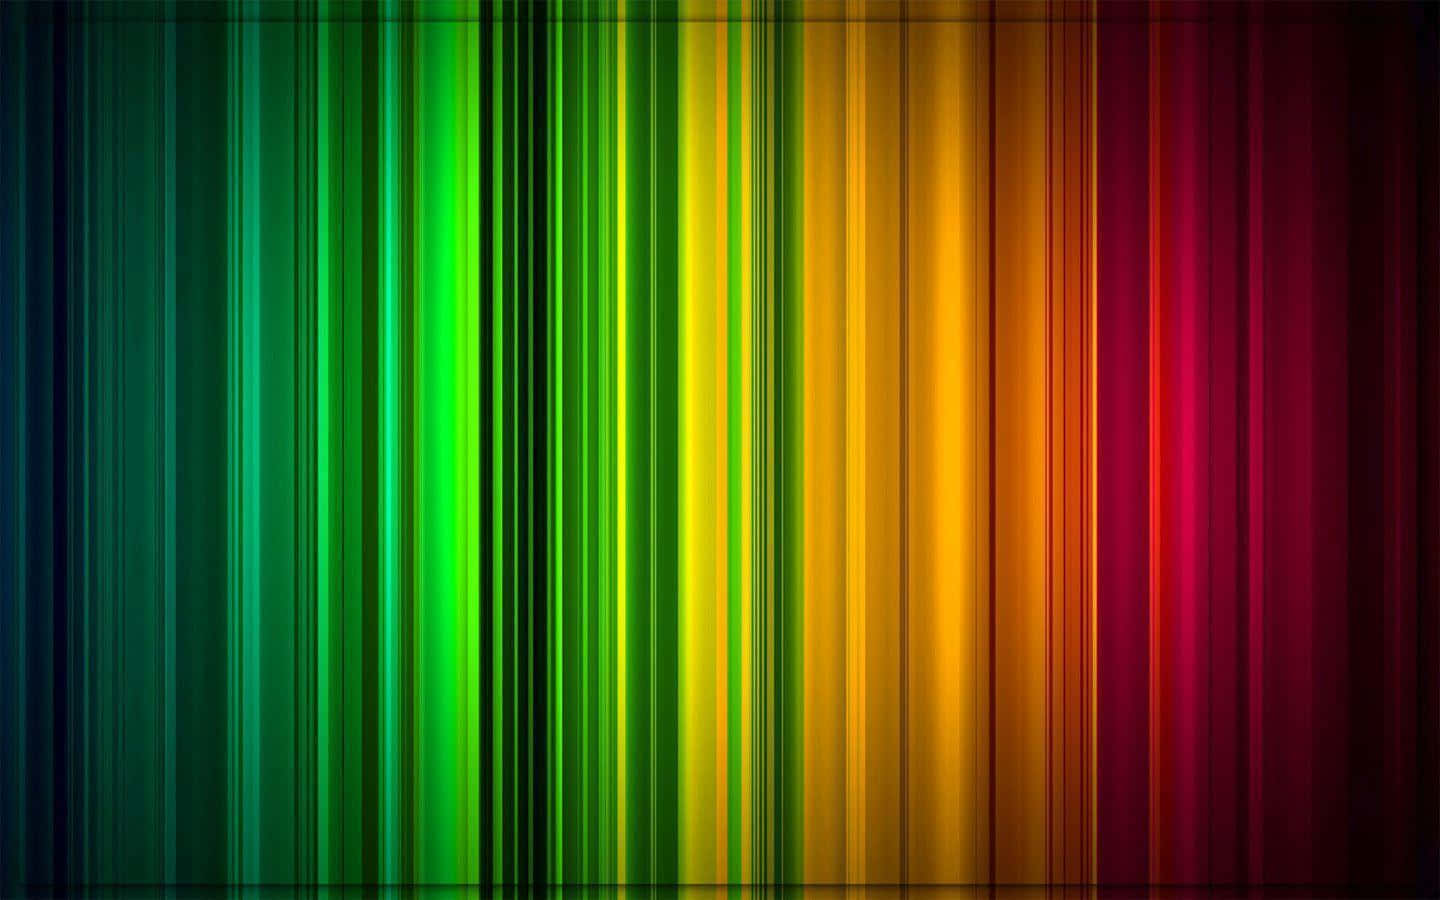 Lystfarvede Spektrumstriber Tværs Over En Mørk Himmel.